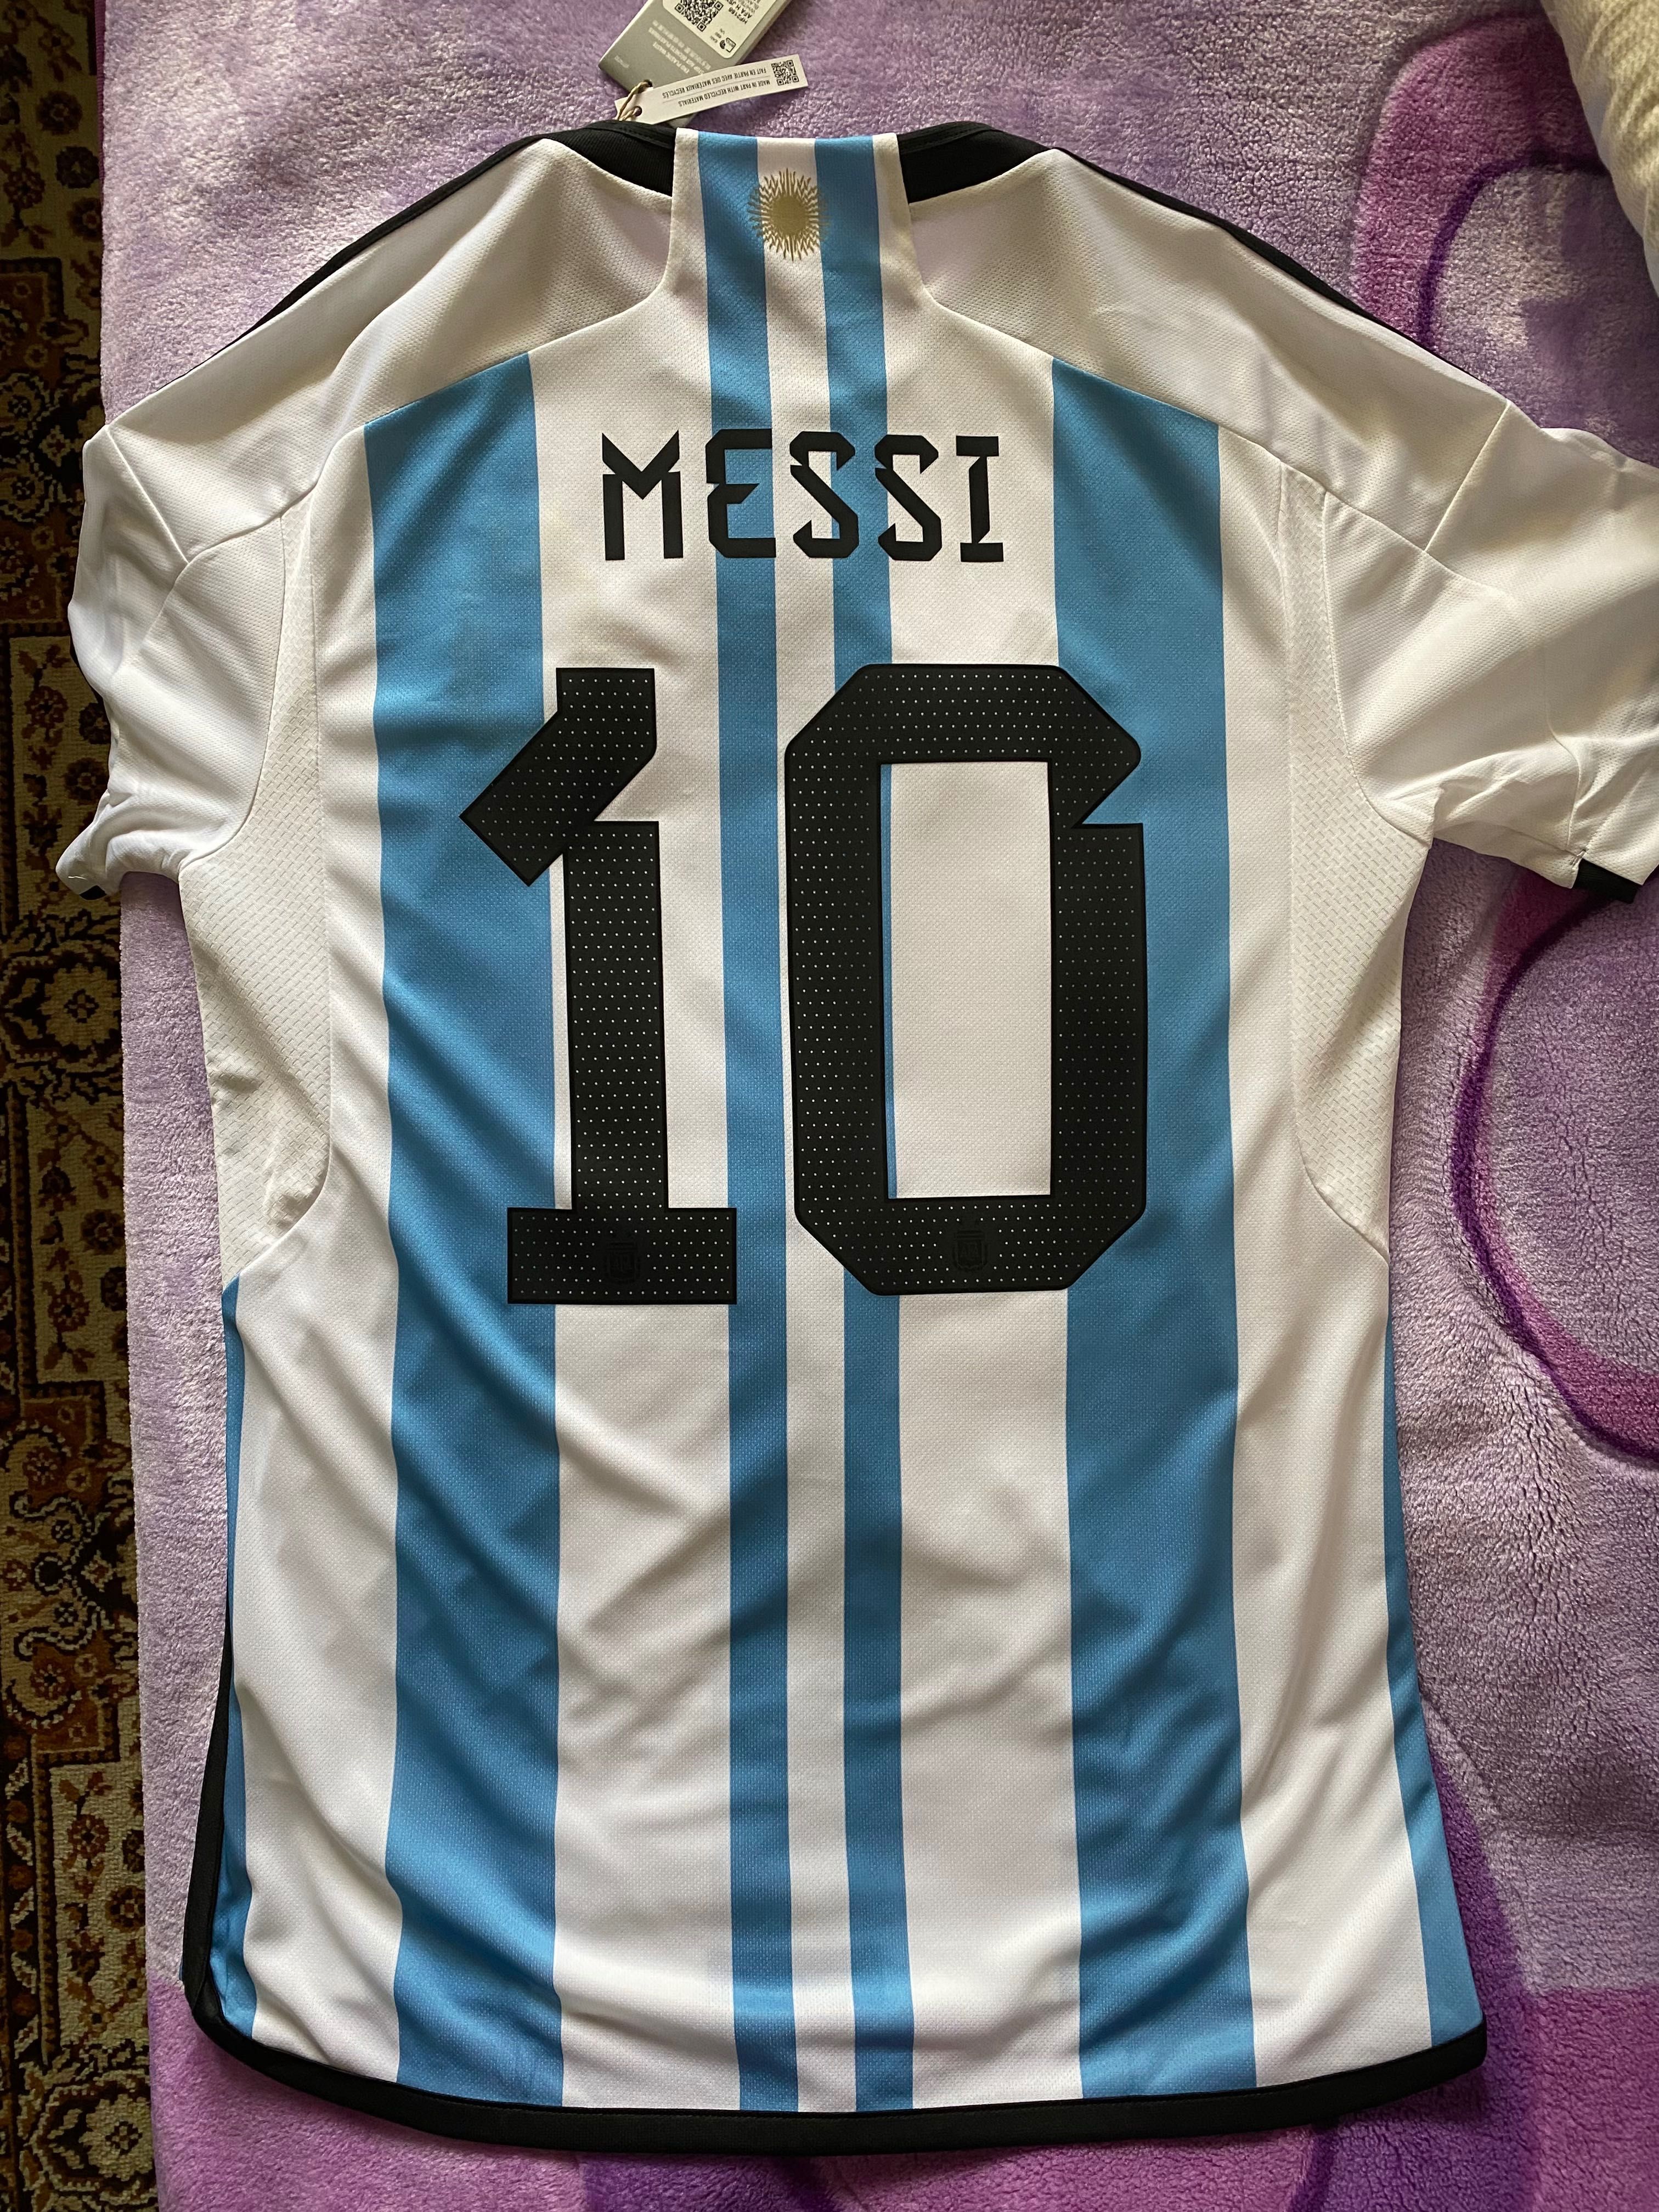 Koszulka Messi Argentyna